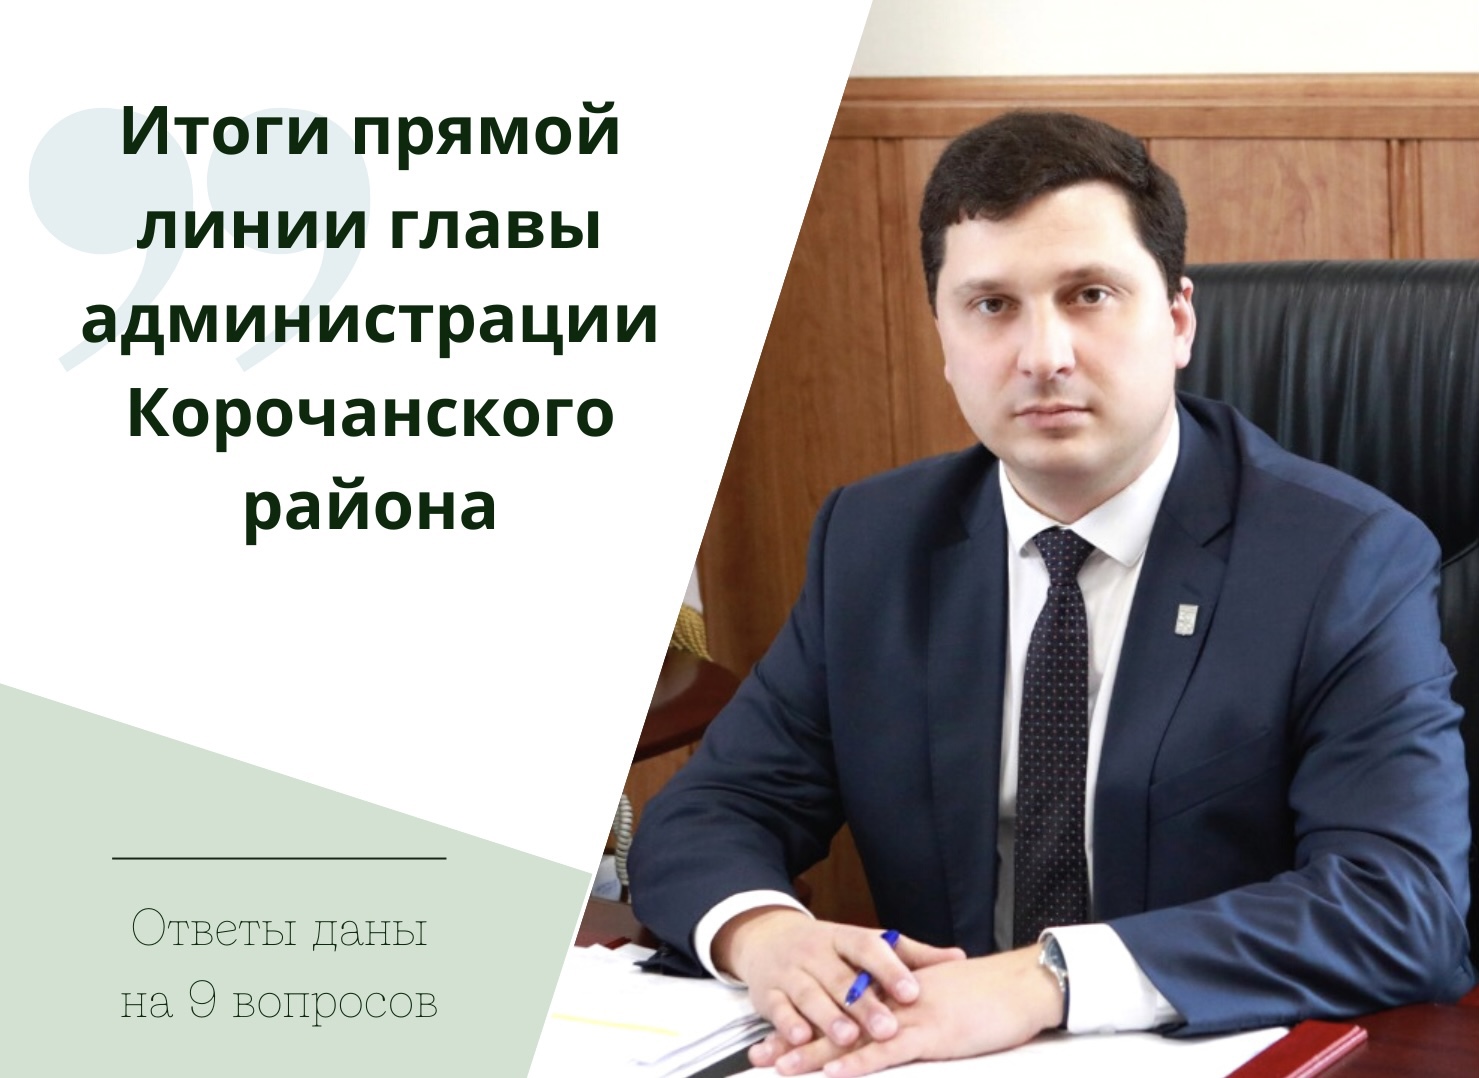 В ходе прямой линии глава администрации района Николай Нестеров ответил на 9 вопросов жителей